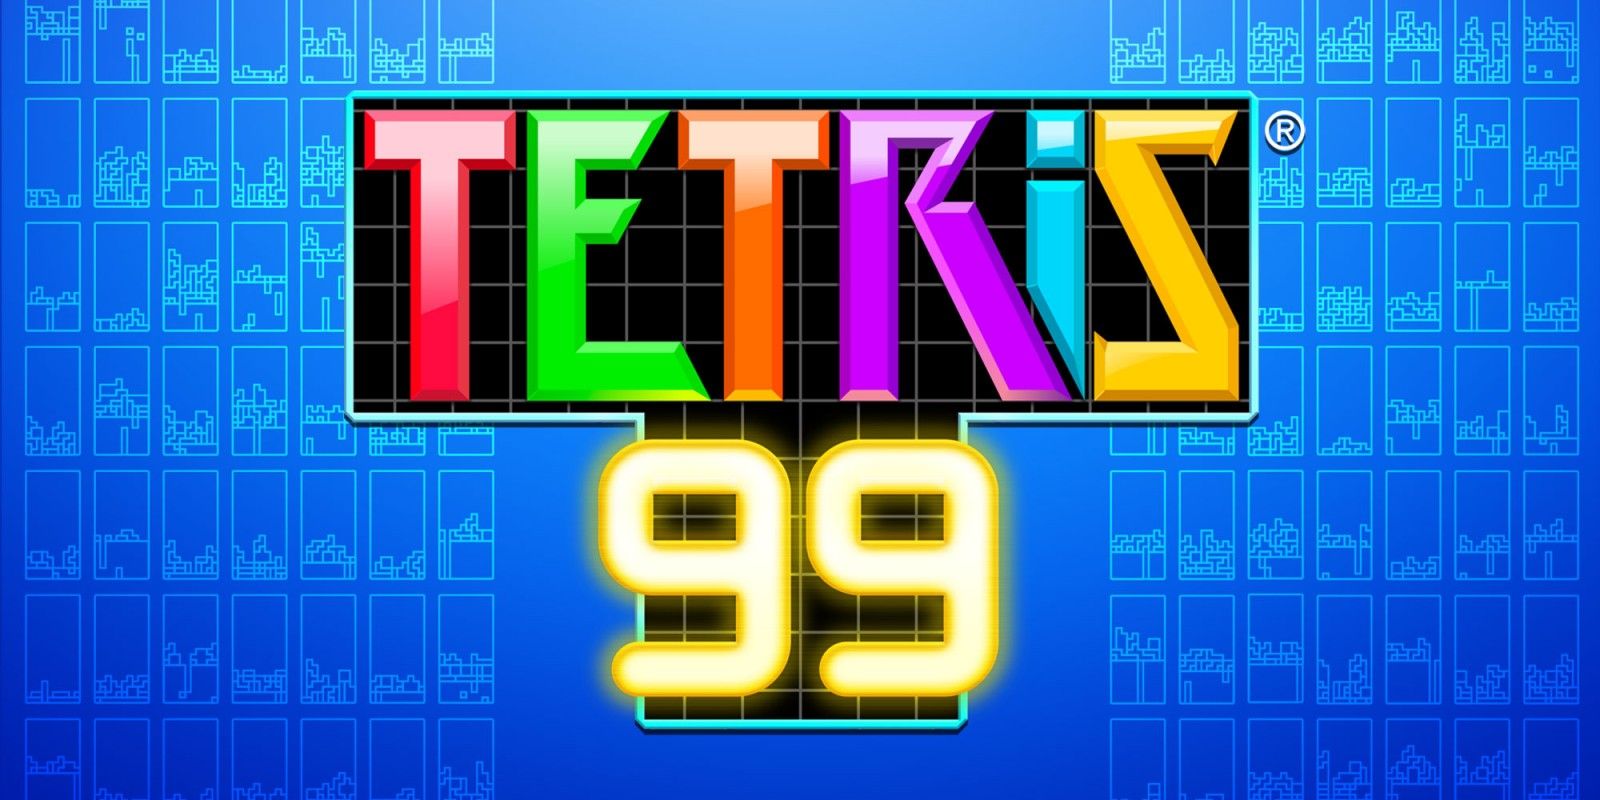 Tetris 99: 10 Tips & Tricks to Becoming a Tetromino God